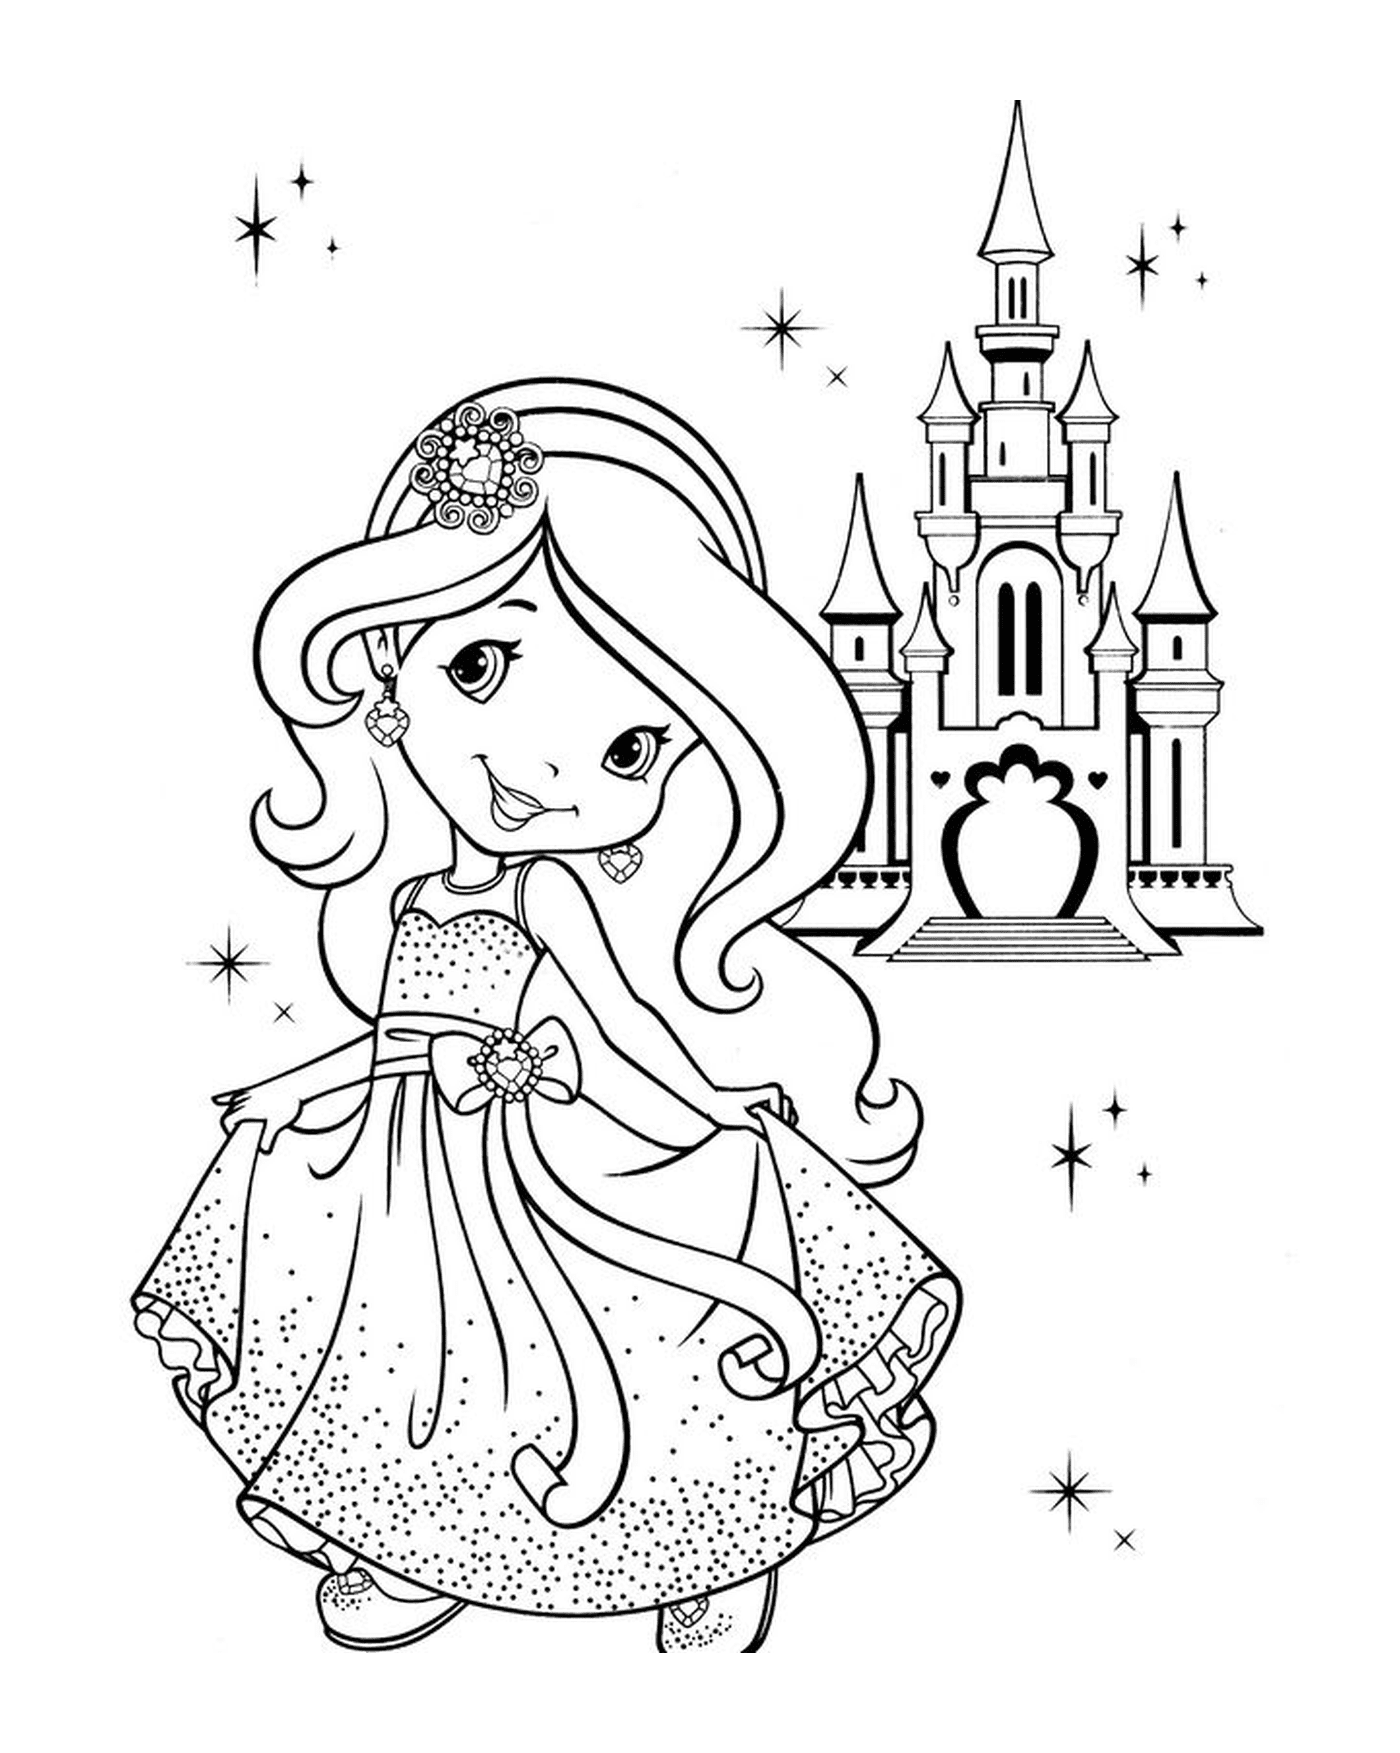  Prinzessin Charlotte vor ihrem Schloss 